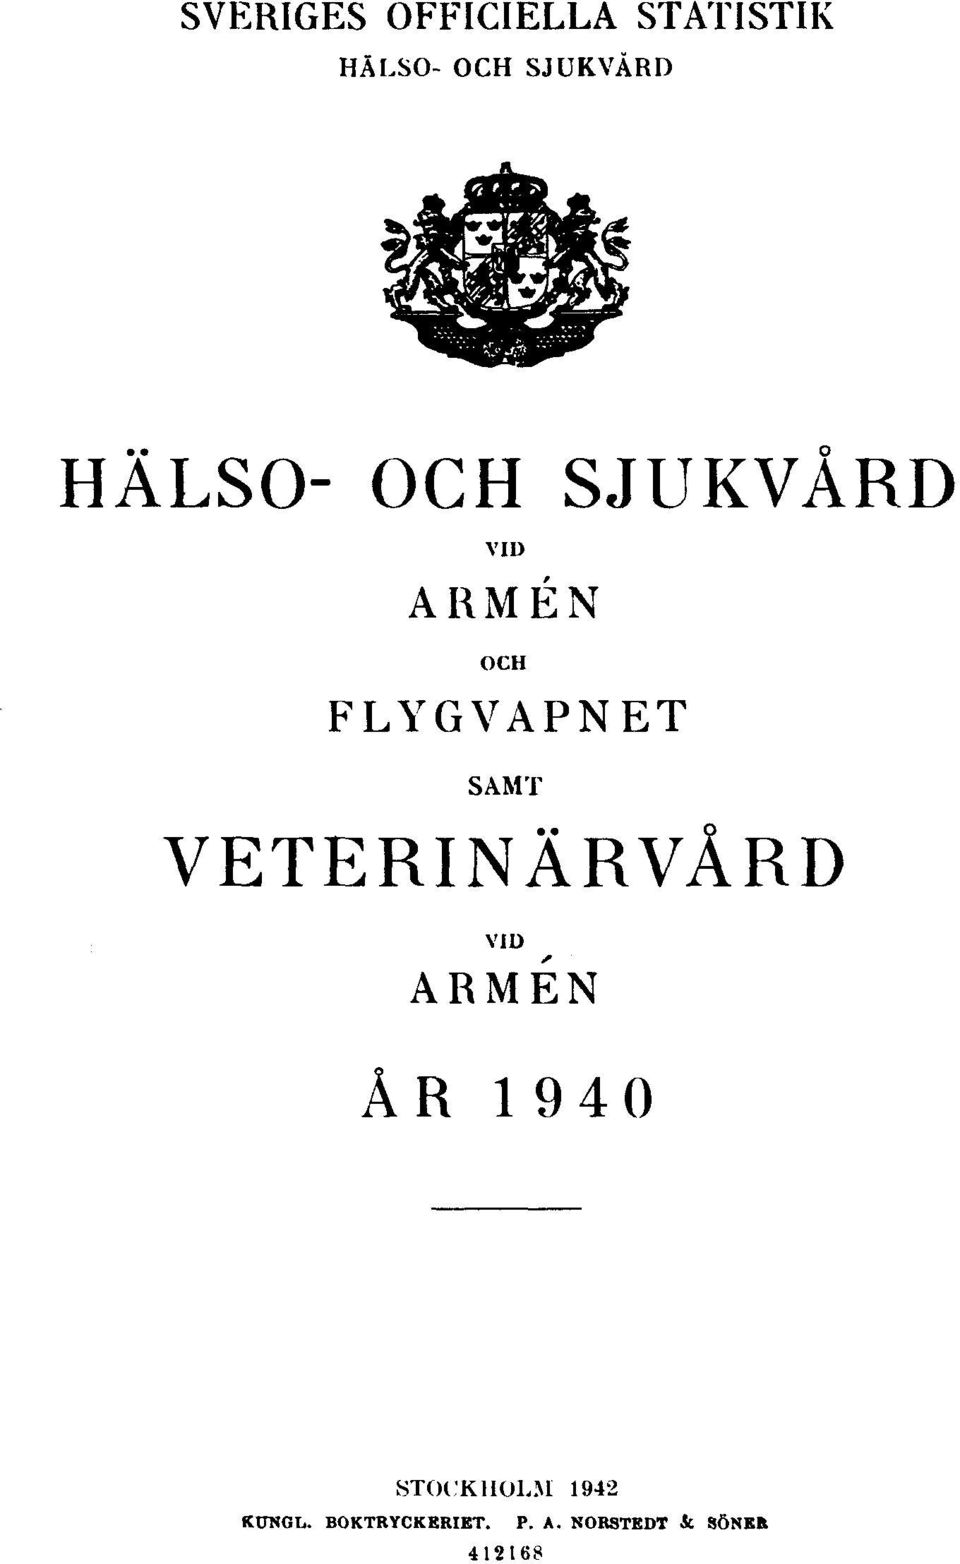 VETERINÄRVÅRD VID ARMÉN ÅR 1940 STOCKHOLM 1942